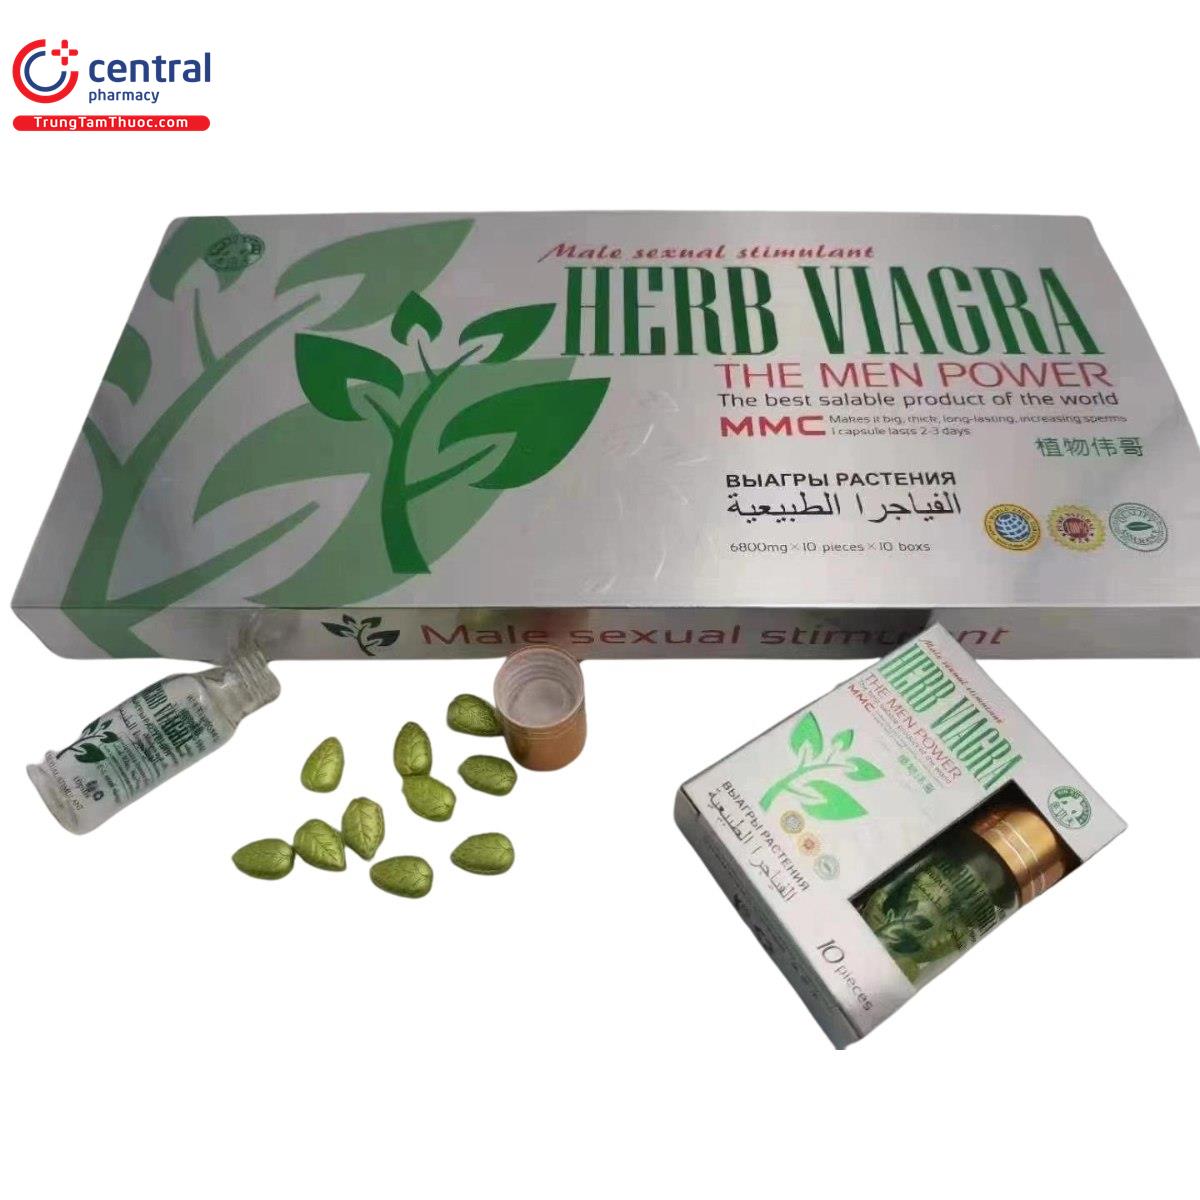 herbal viagra 6800mg 10 K4744